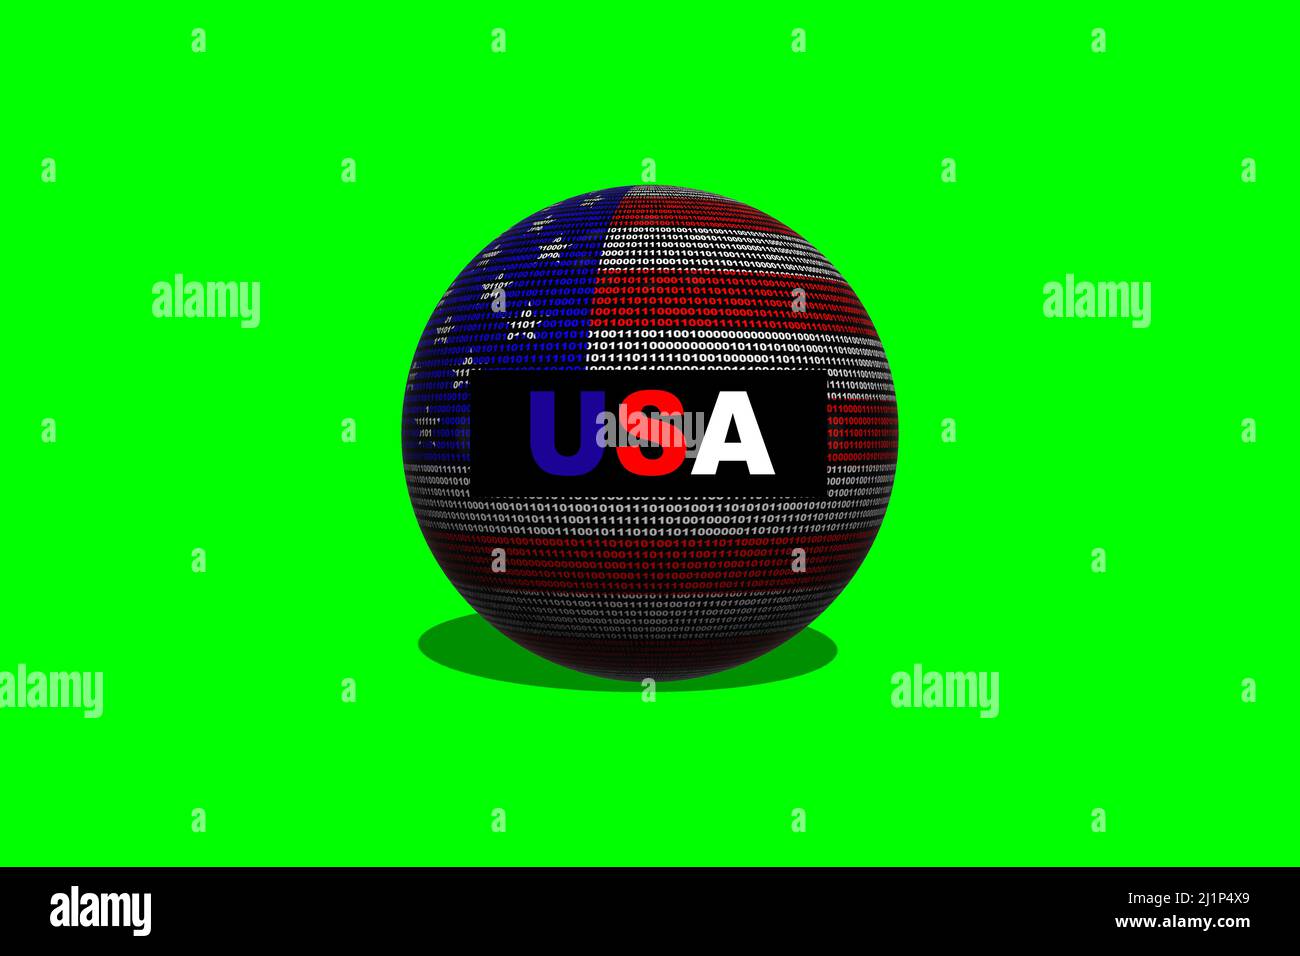 Hacker Estados Unidos (EE.UU.) 3D bola. Bandera digital de USA y un fondo binario concepto de ciberseguridad con 0 y 1. Hacker informático Estados Unidos. Foto de stock